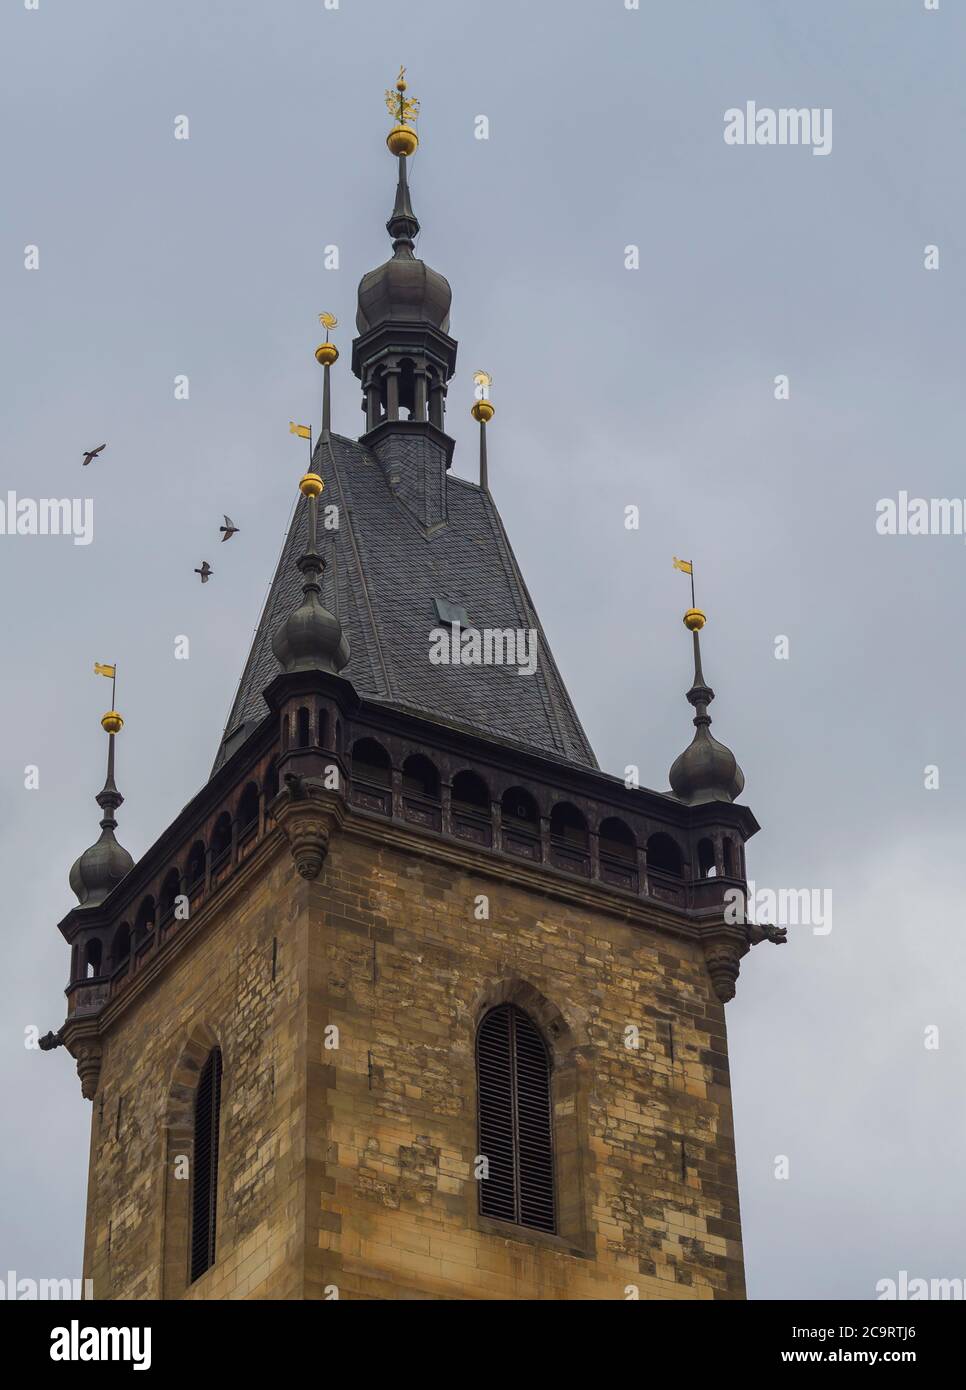 gros plan sur la tour gothique de la nouvelle mairie de la place charles de prague avec une flèche dorée et un pigeon volant Banque D'Images